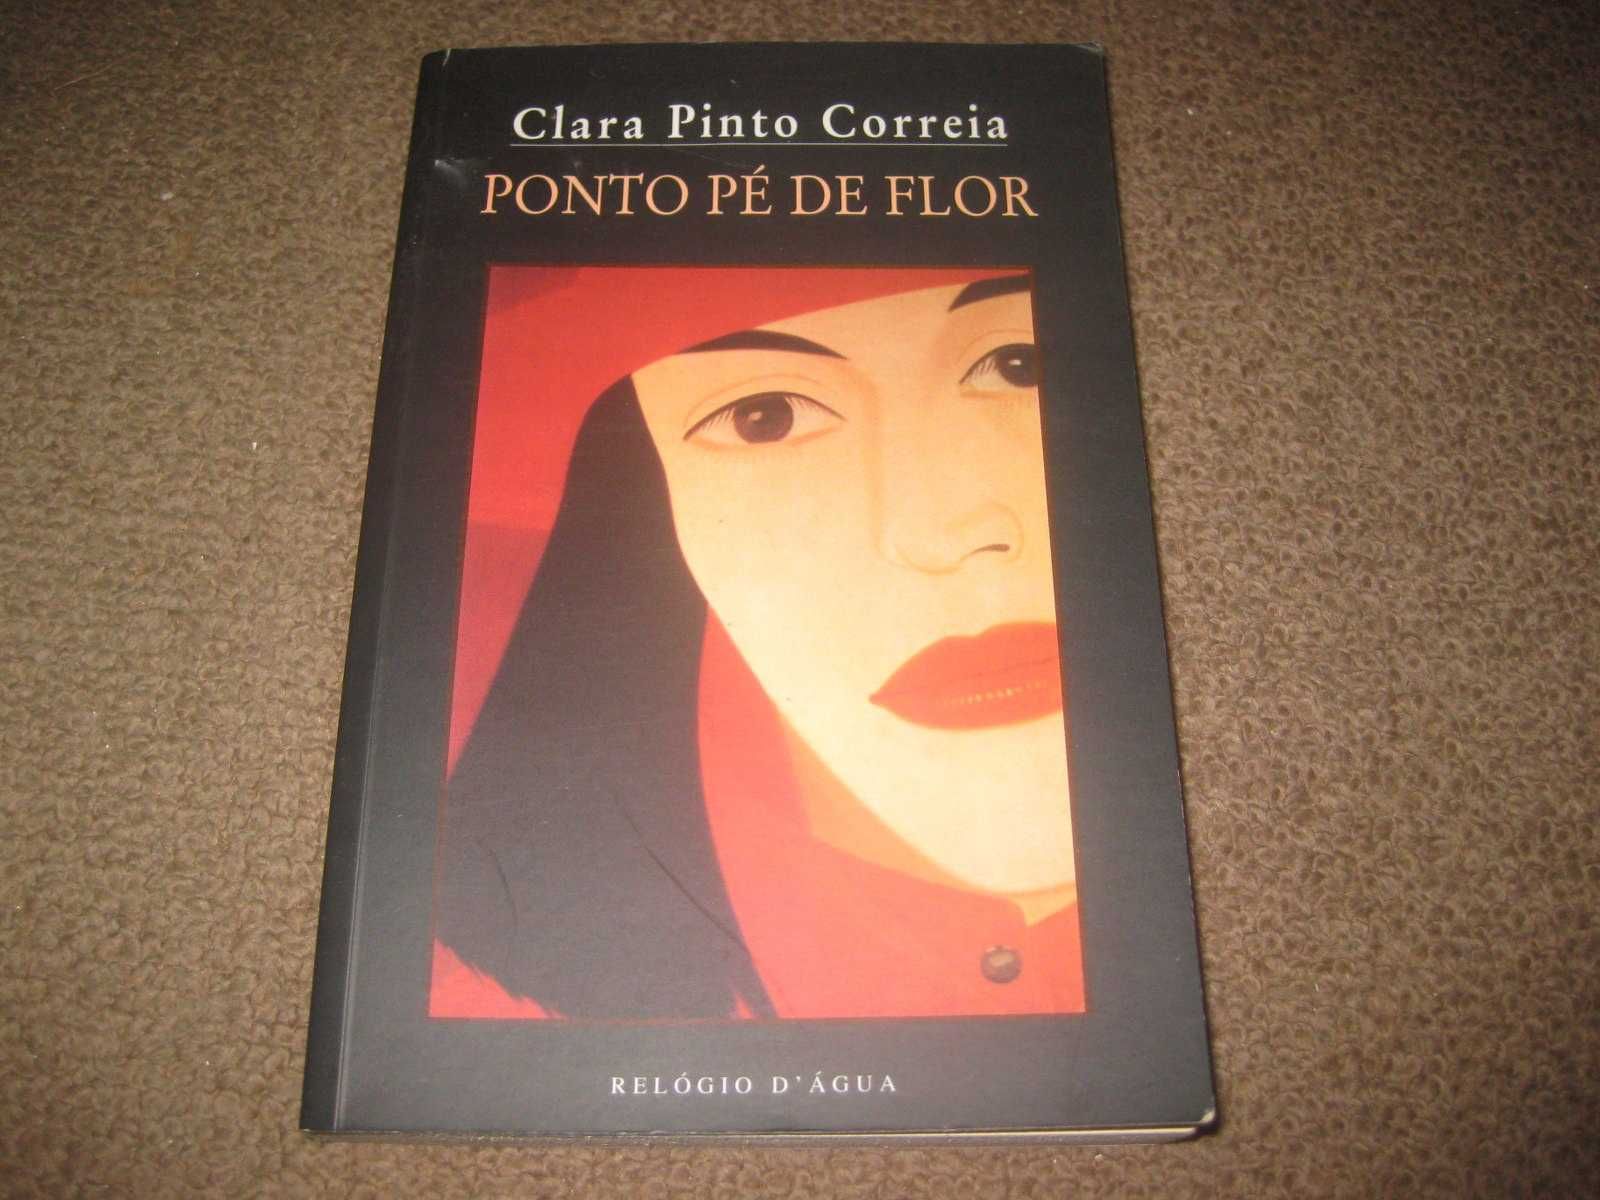 Livro "Ponto Pé de Flor" de Clara Pinto Correia